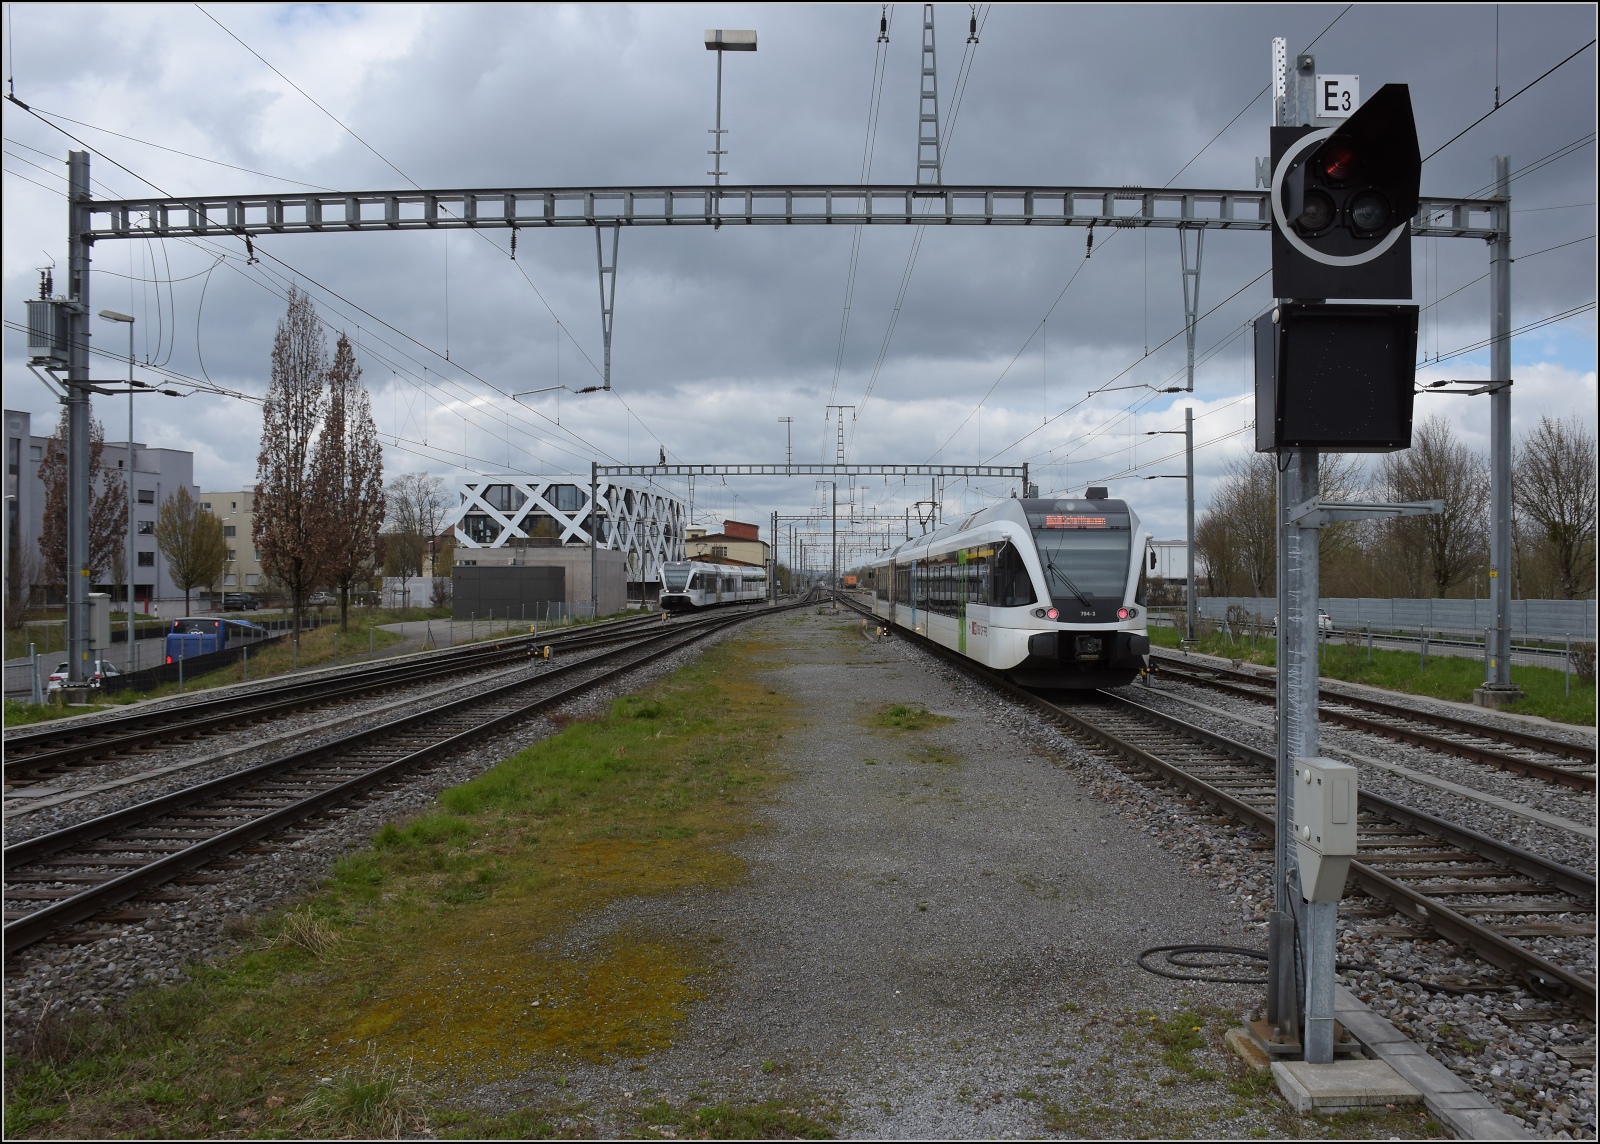 Heute streiken mal nicht Fahrzeuge, Weichen oder Signale, sondern die Mitarbeiter.

In Kreuzlingen fährt RABe 526 794 als S1 nach Schaffhausen aus. März 2023.